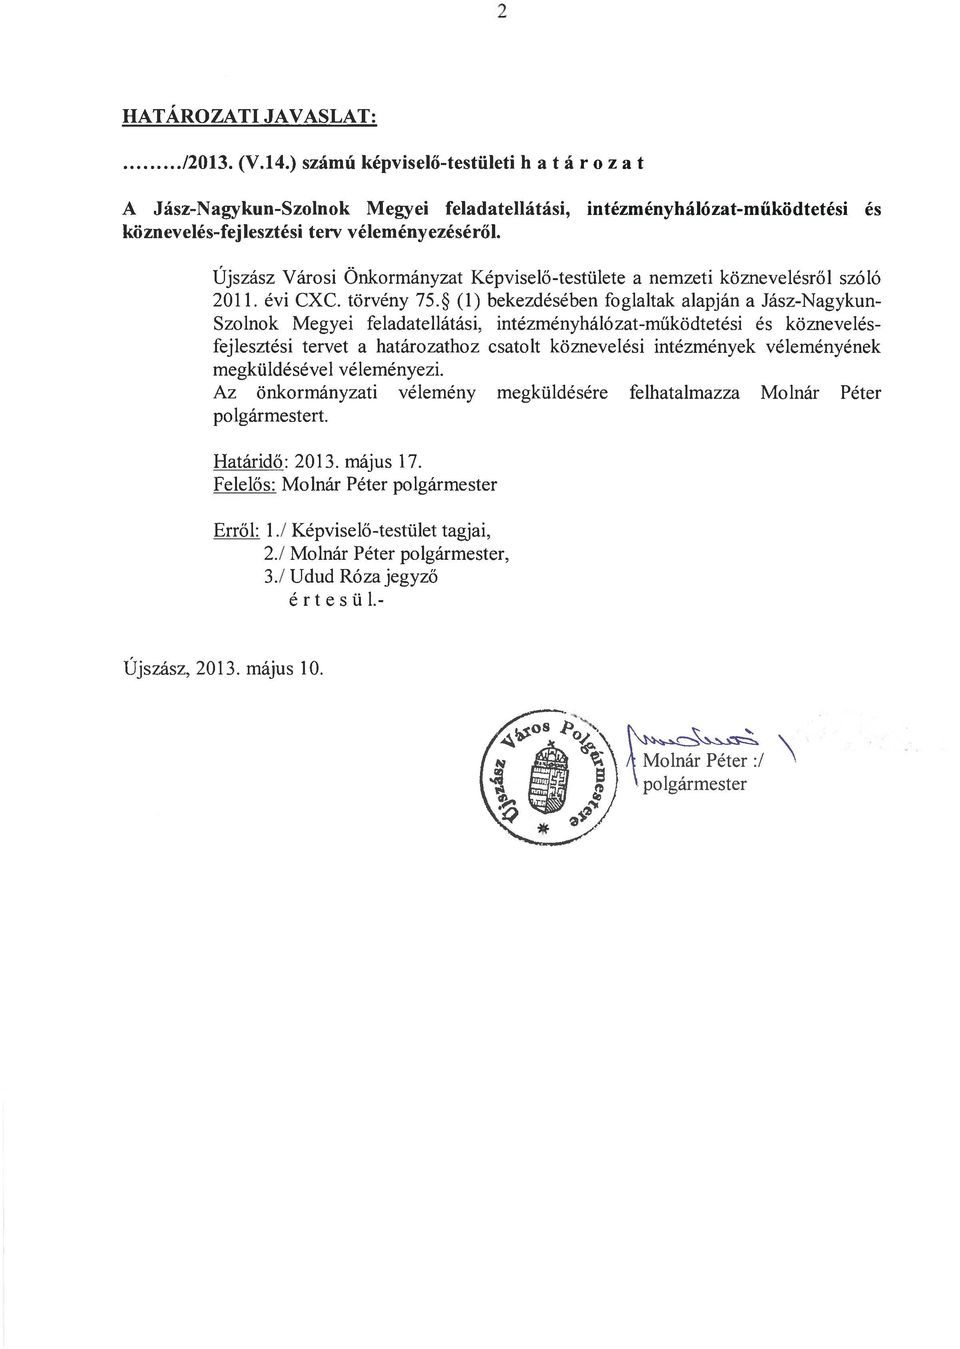 Újszász Városi Önkormányzat Képviselő-testülete a nemzeti köznevelésről szóló 2011. évi CXC. törvény 75.